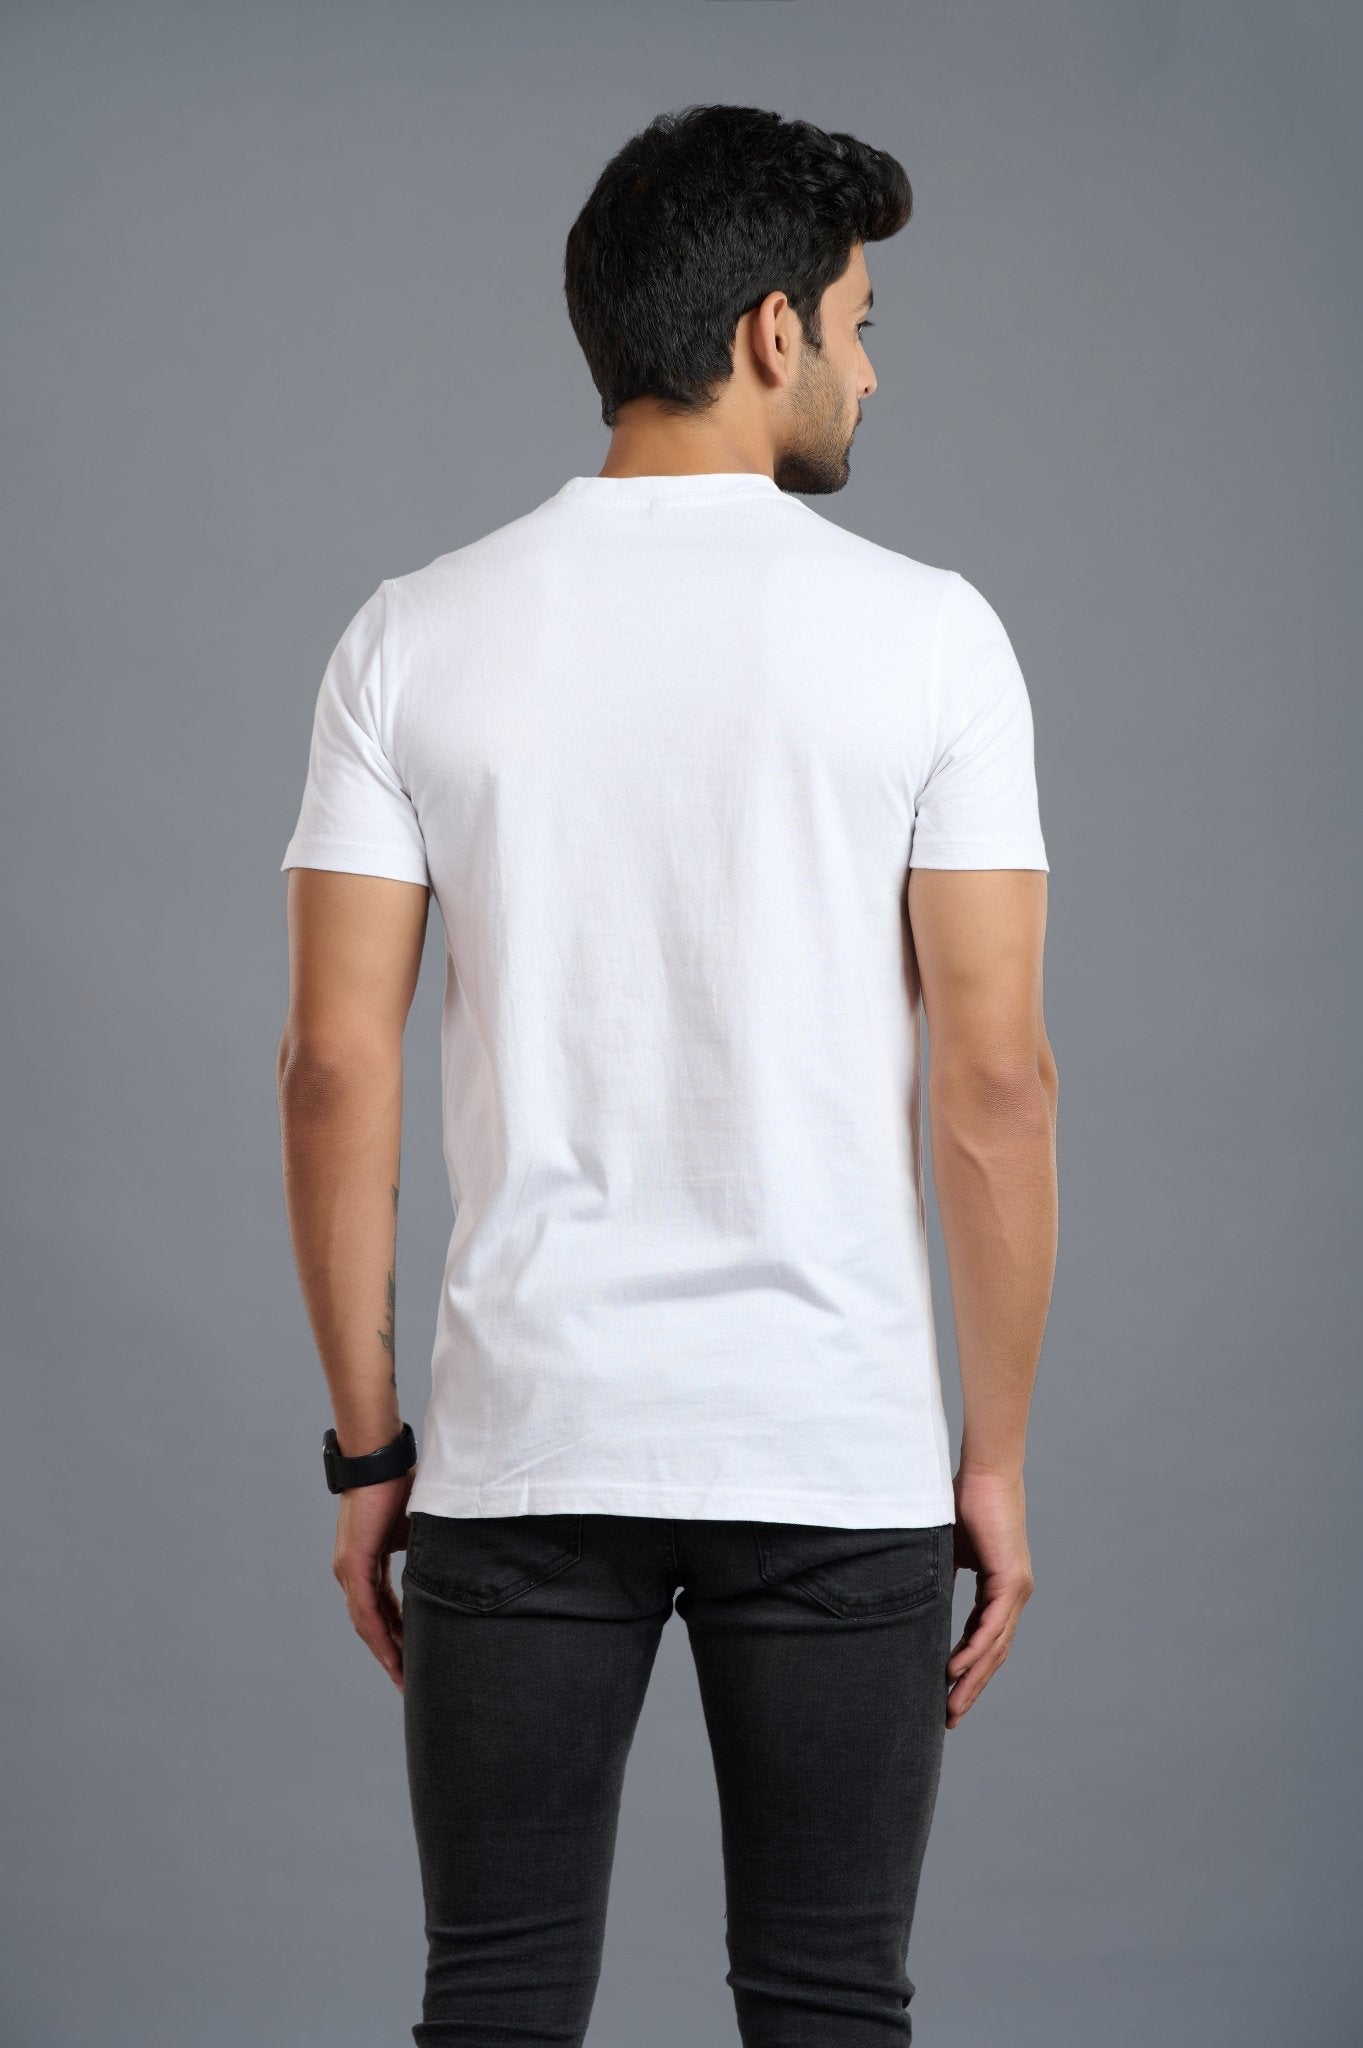 LUCIFER White T-shirt for Men - Go Devil